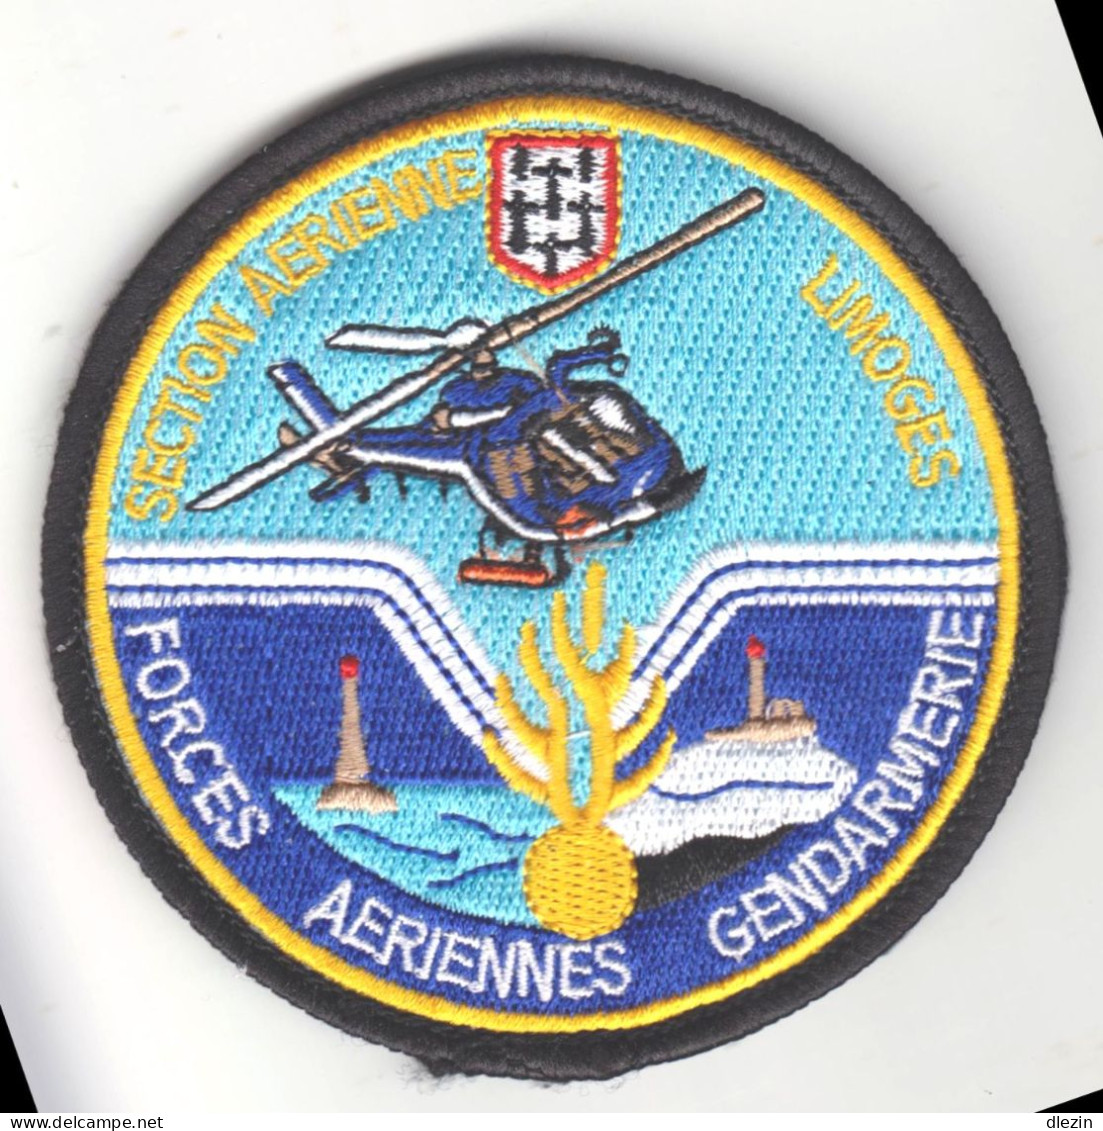 Forces Aériennes De La Gendarmerie. Section Aérienne. Limoges. Titre D'épaule Velcro. - Esercito